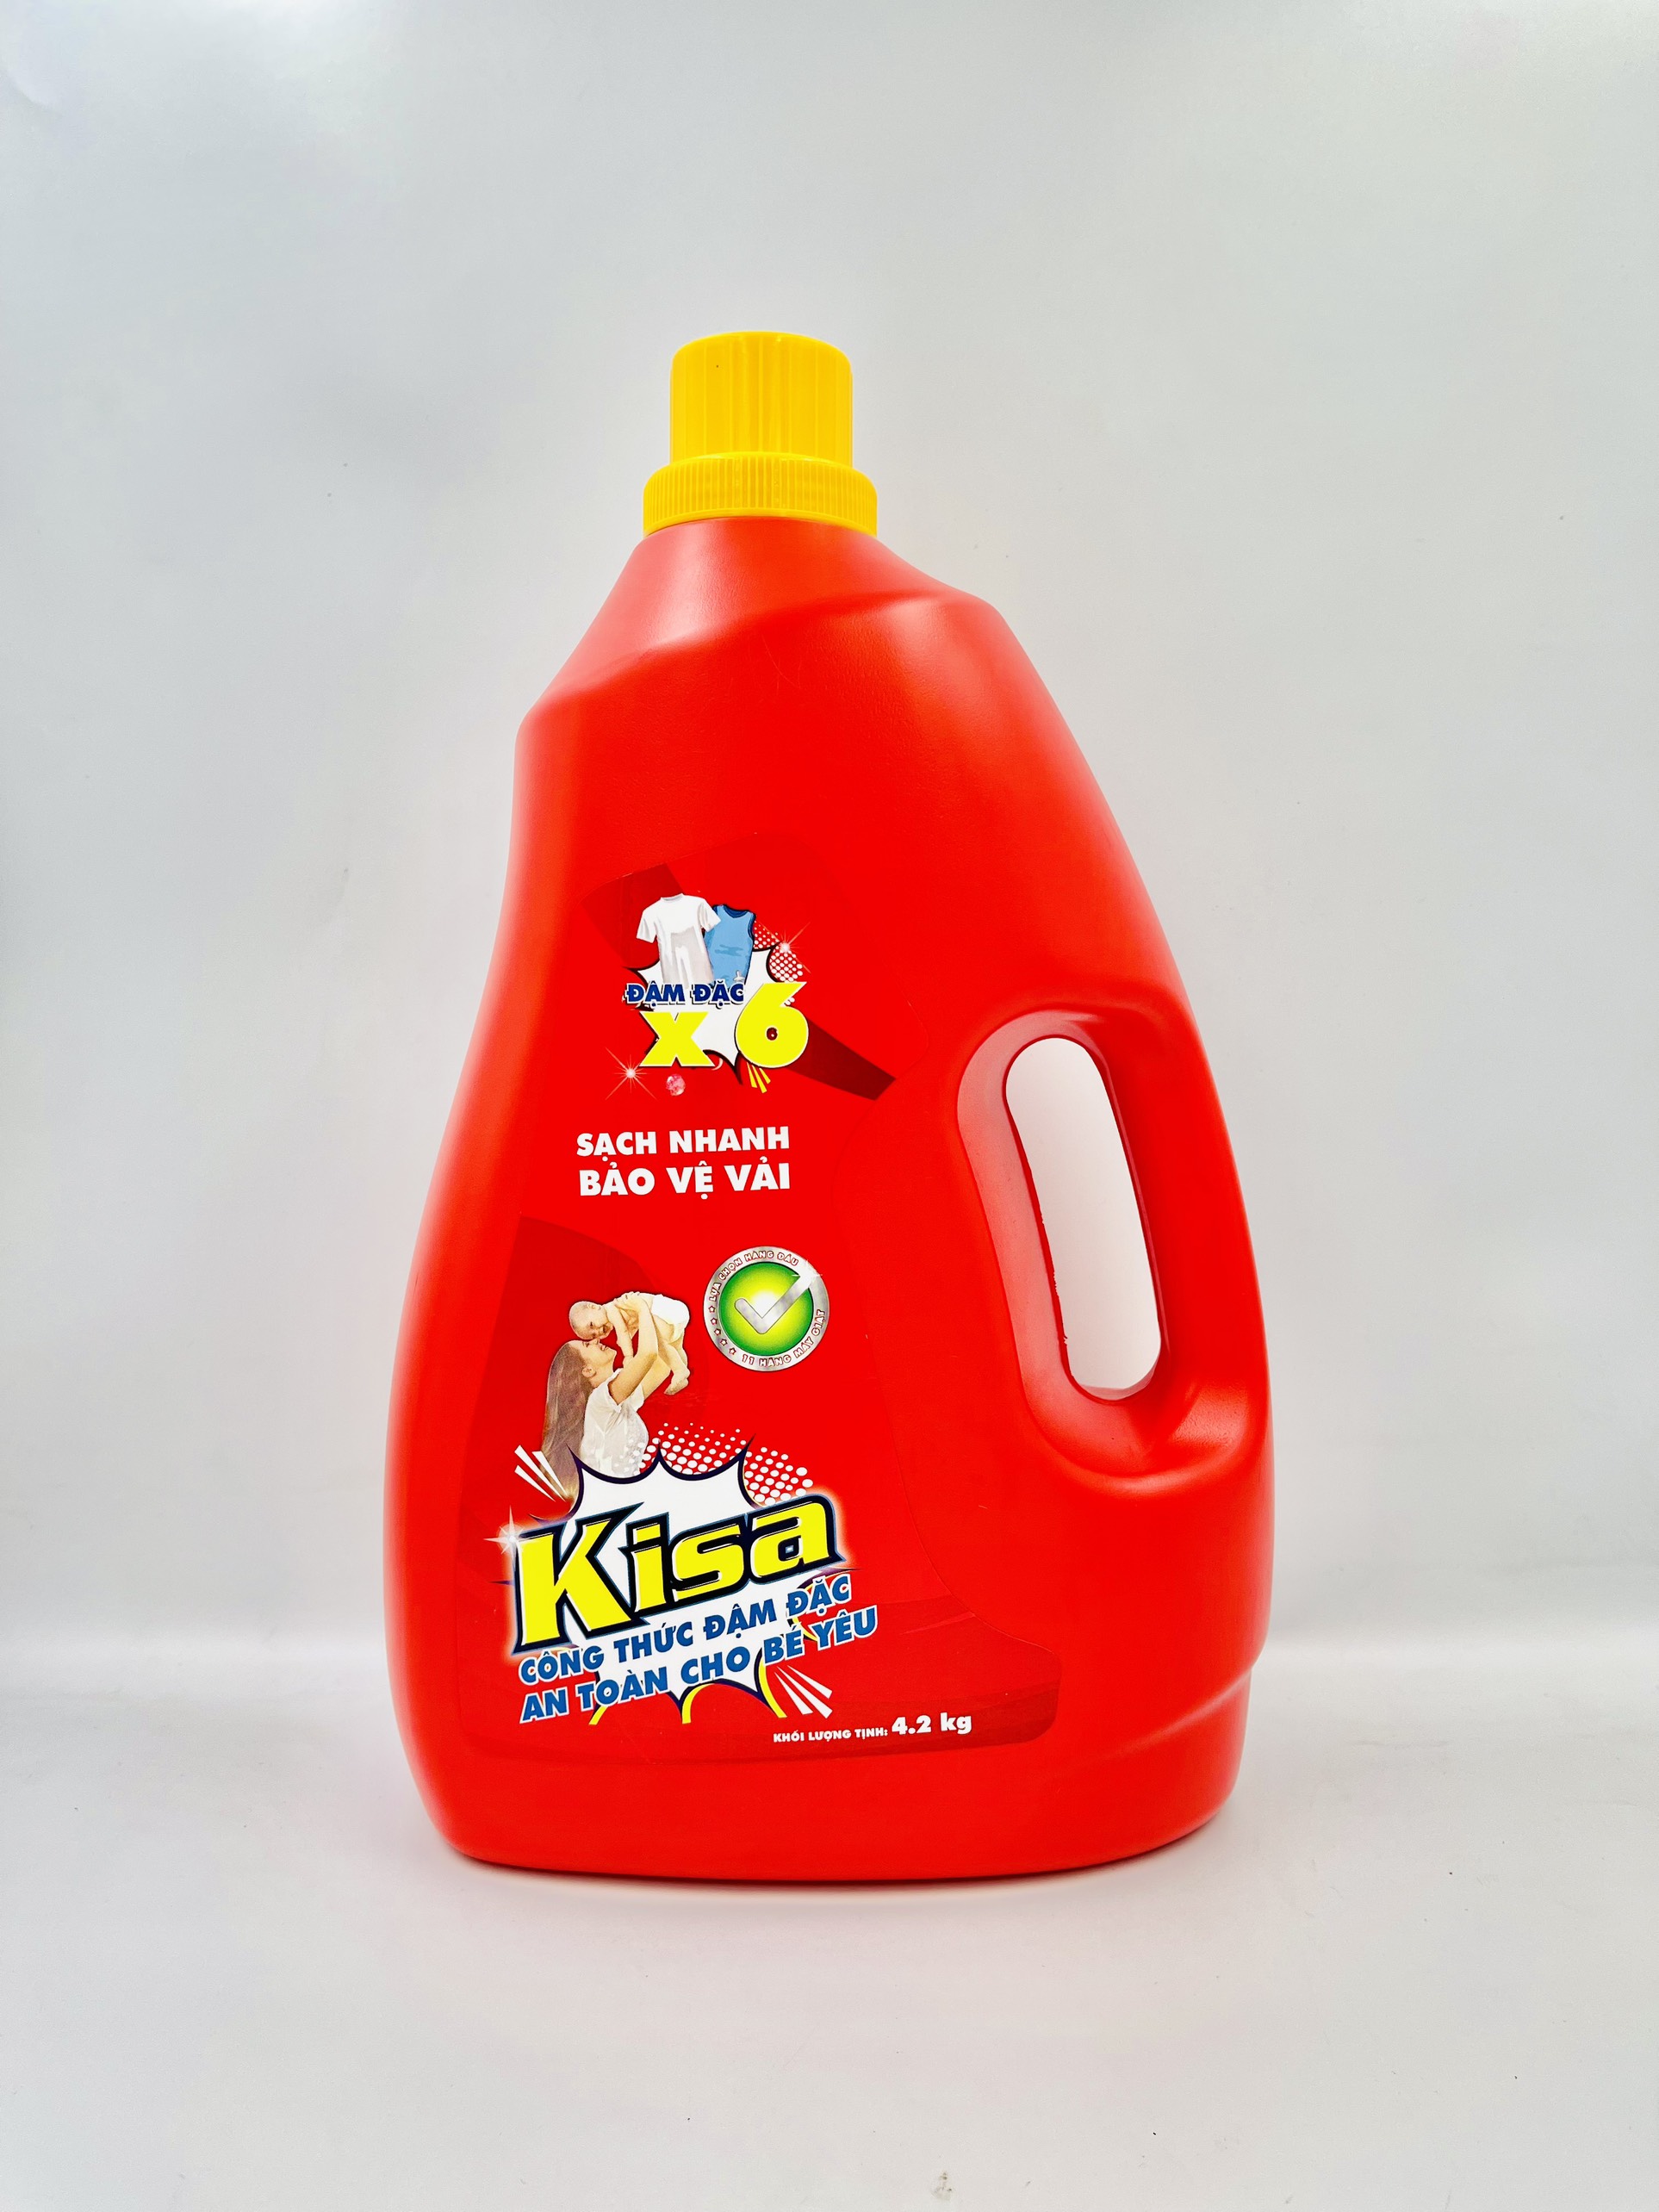 Nước giặt đậm đặc Kisa 4.2 kg -  An toàn cho bé yêu